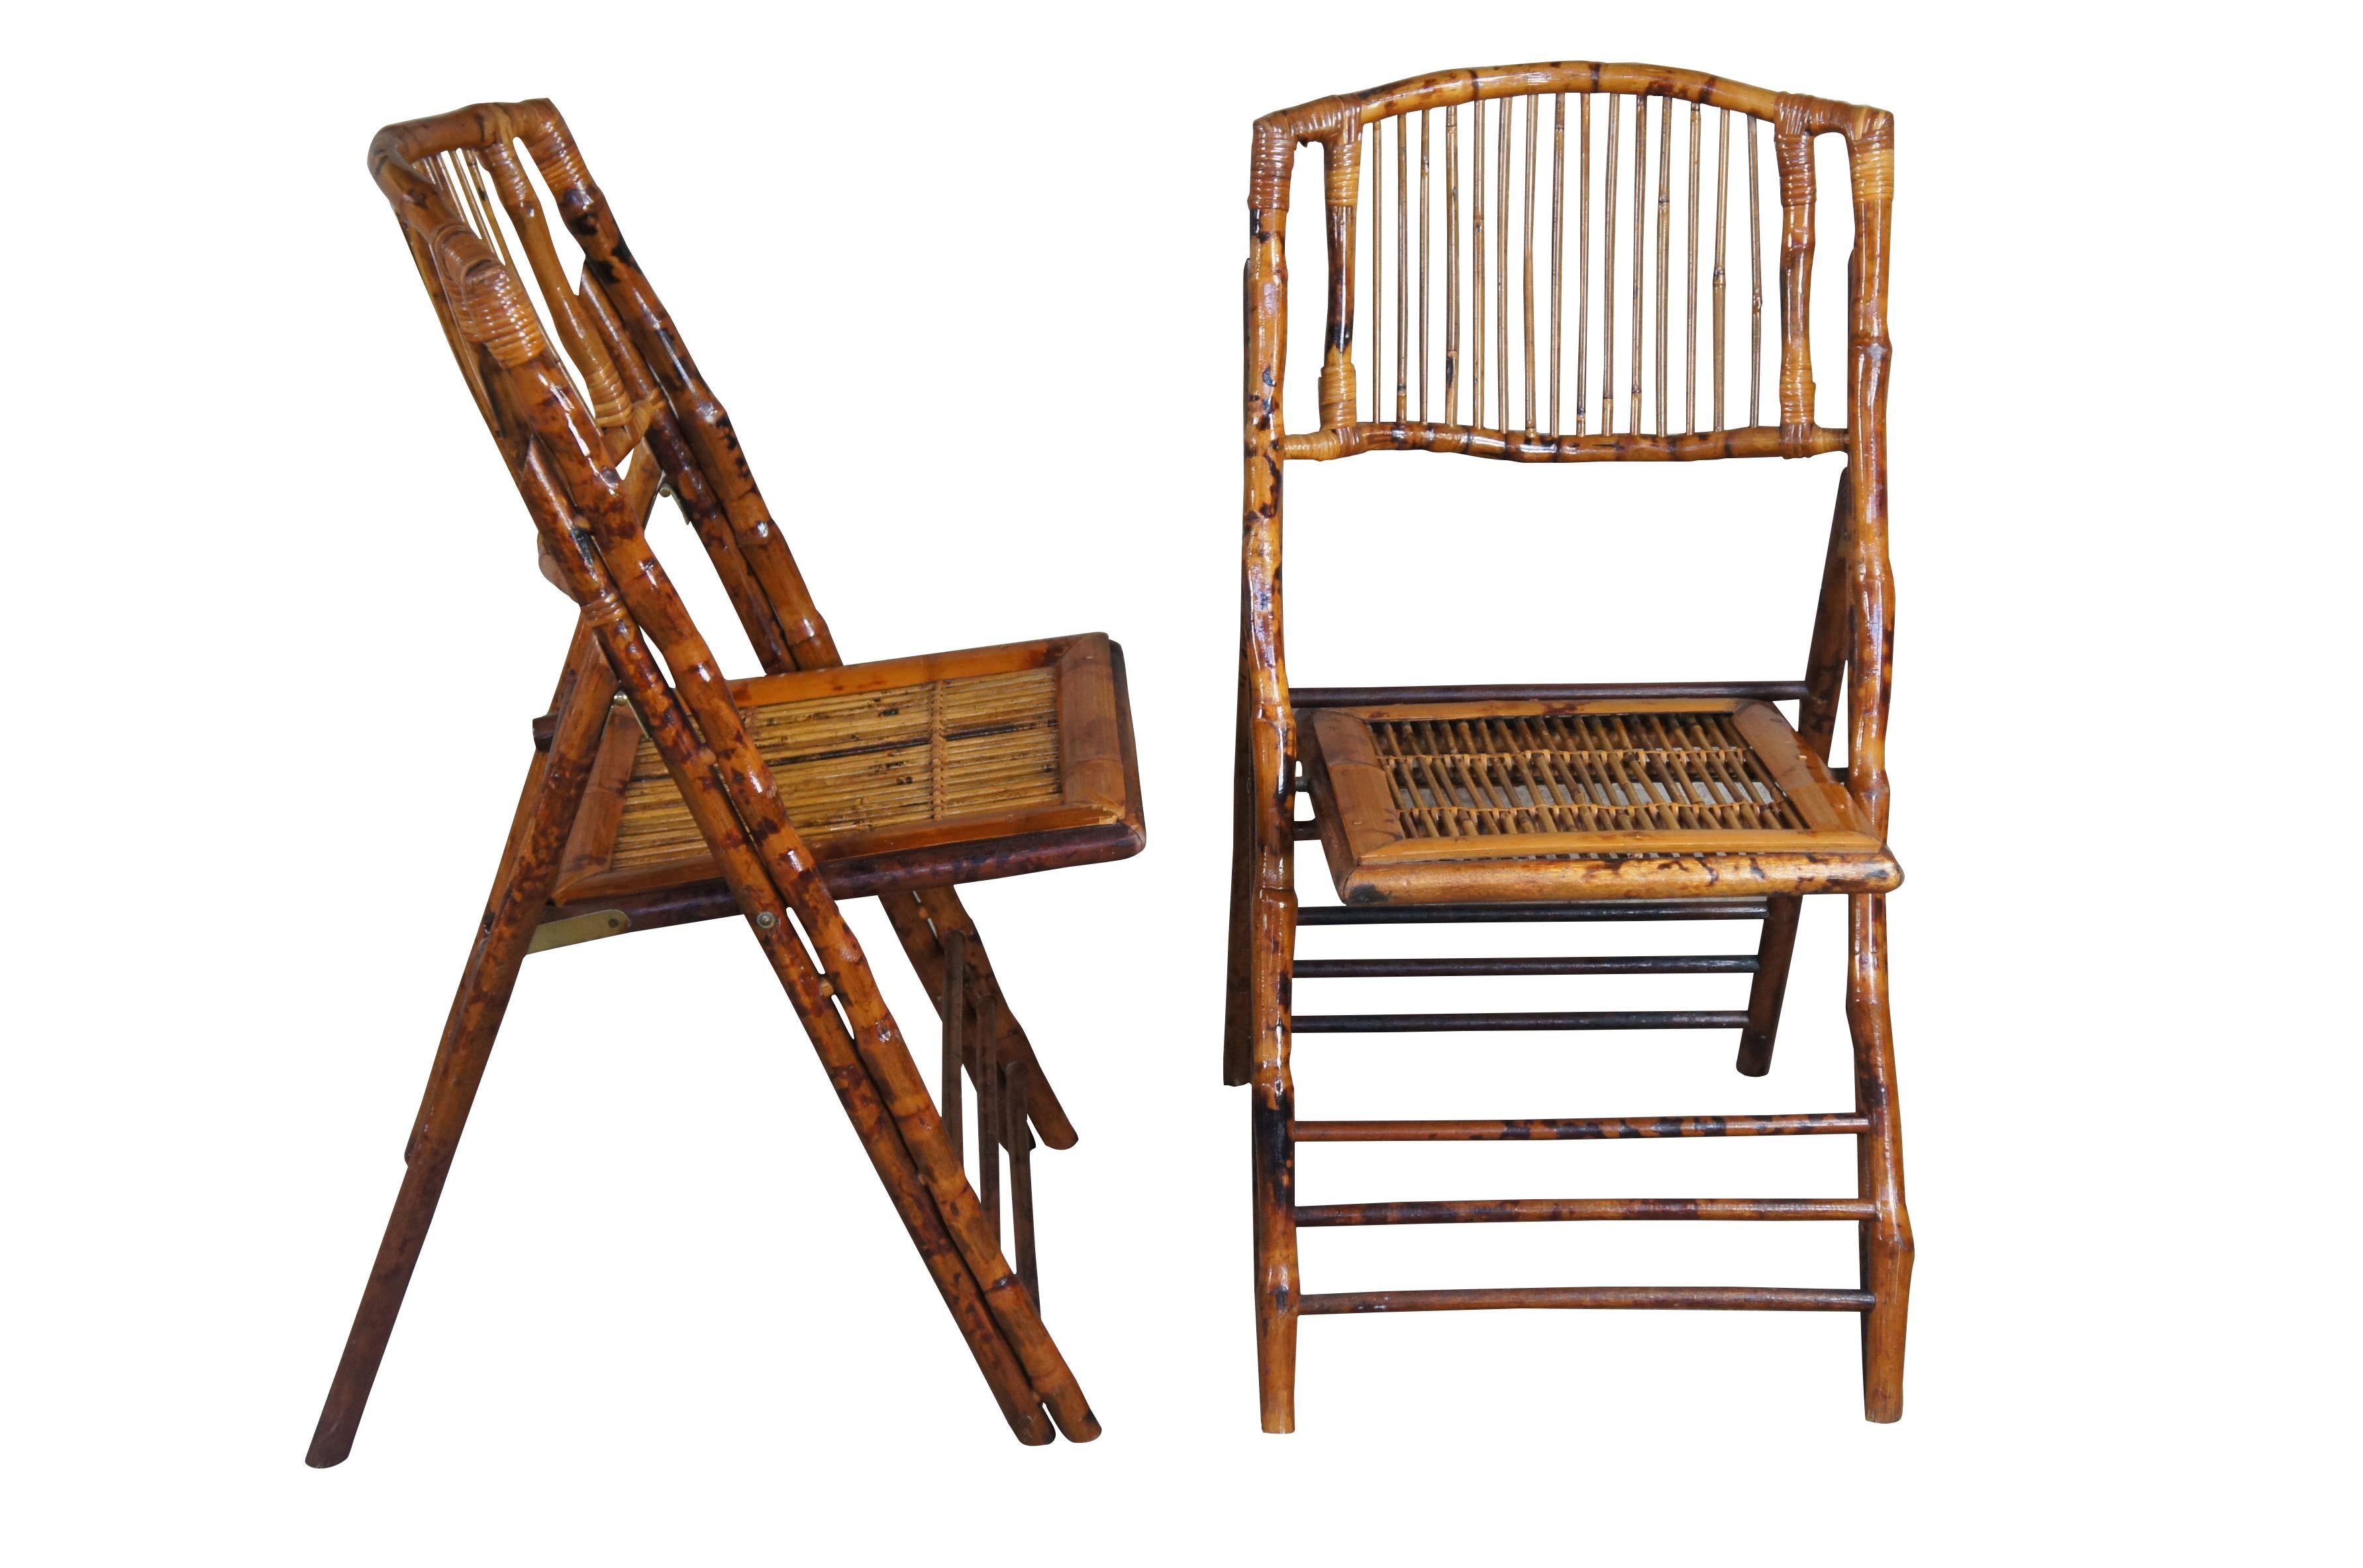 Ensemble de 4 chaises d'appoint pliantes en bambou de style British Coloni, datant du milieu du 20e siècle, avec dossiers à lattes et accents en rotin. Nous charmant par leur présence rustique et leur belle patine, cet ensemble de chaises d'appoint